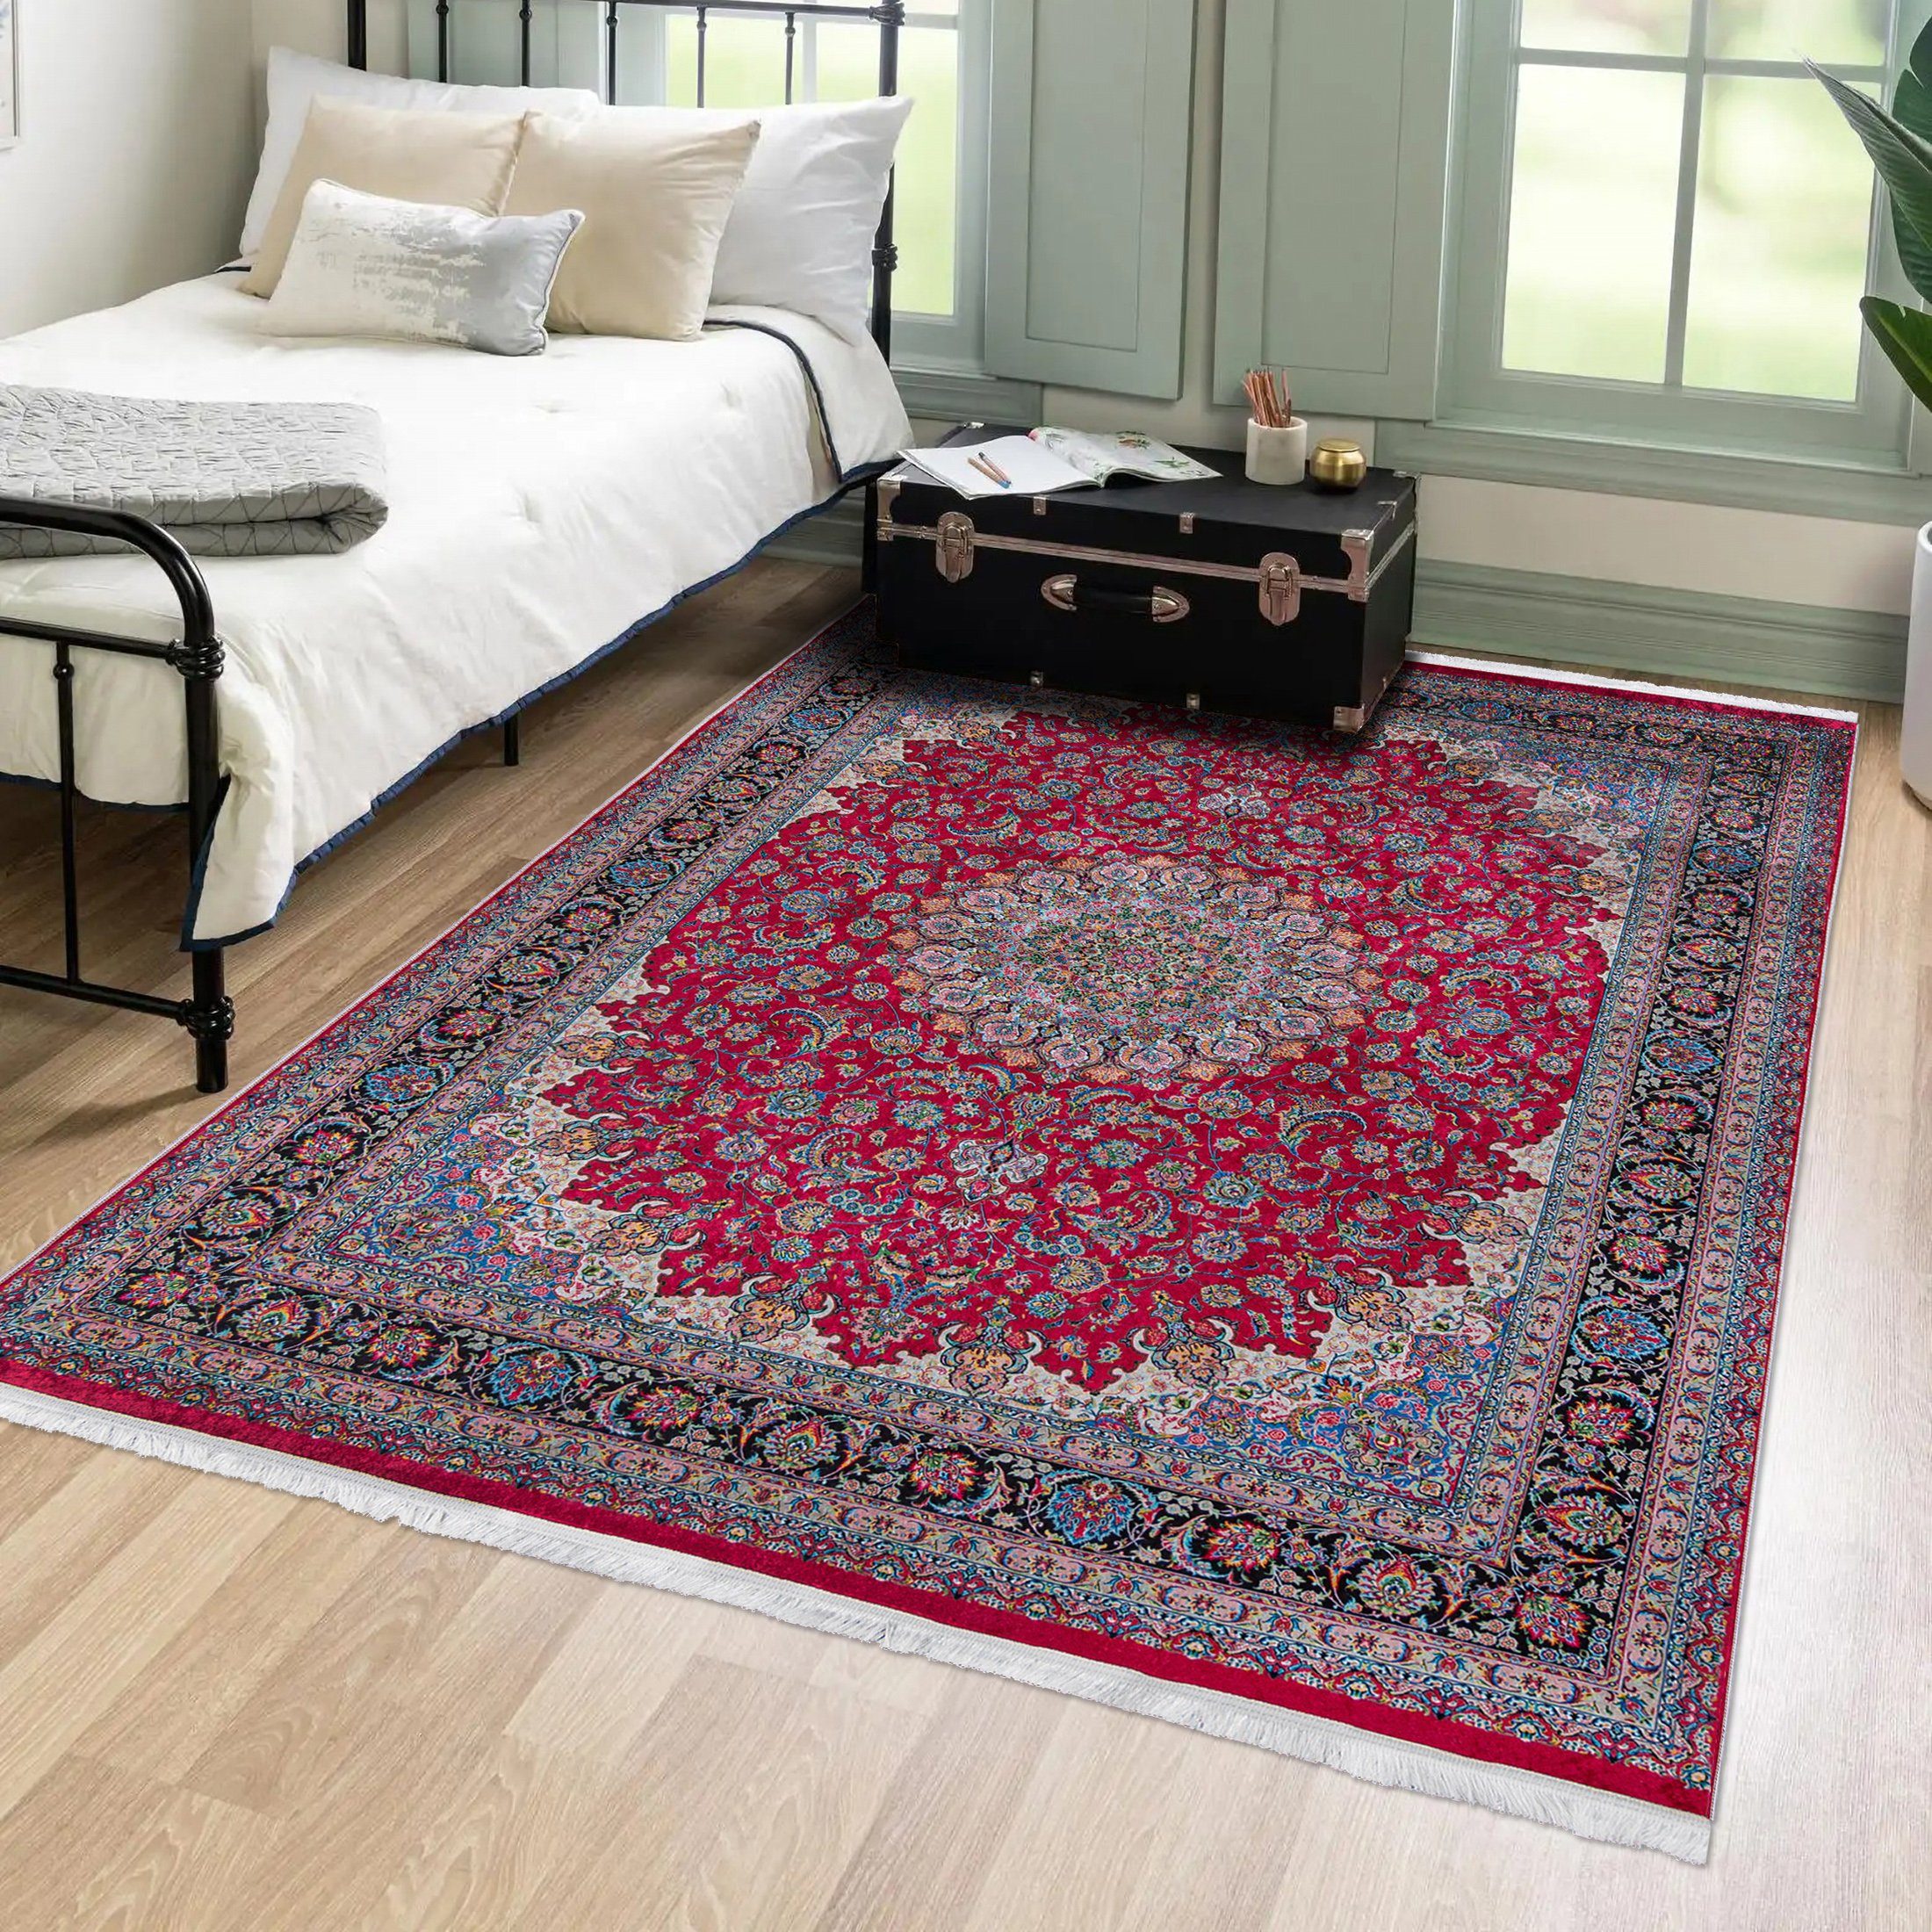 Orientteppich Orientalisch Vintage Teppich Traditioneller Orient Teppich, Mazovia, 120 x 170 cm, Kurflor, Waschbar in Waschmaschine, Höhe 5 mm, Rutschfest Rot / 42360